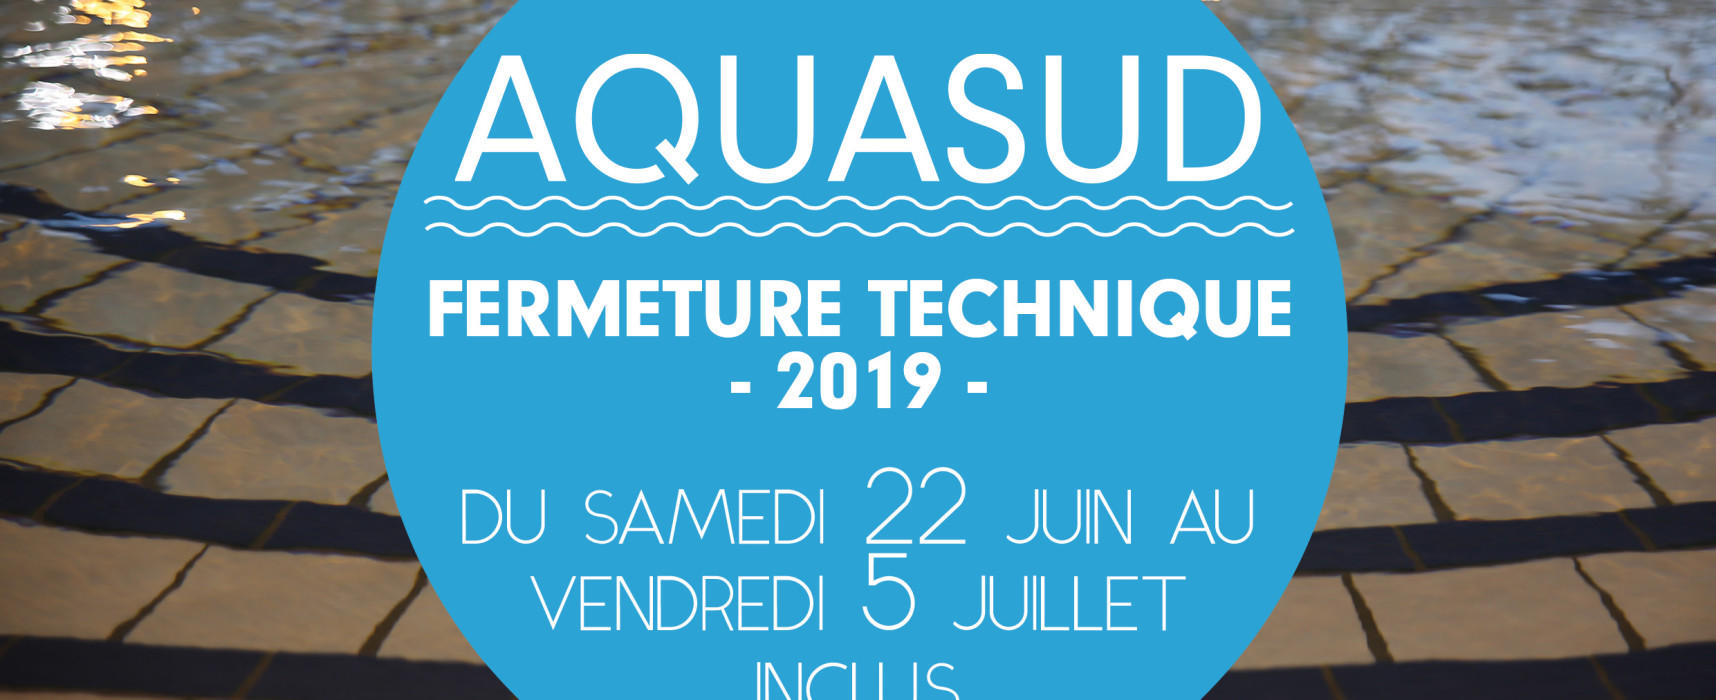 AQUASUD – Fermeture technique annuelle du samedi 22 juin au vendredi 5 juillet 2019 inclus